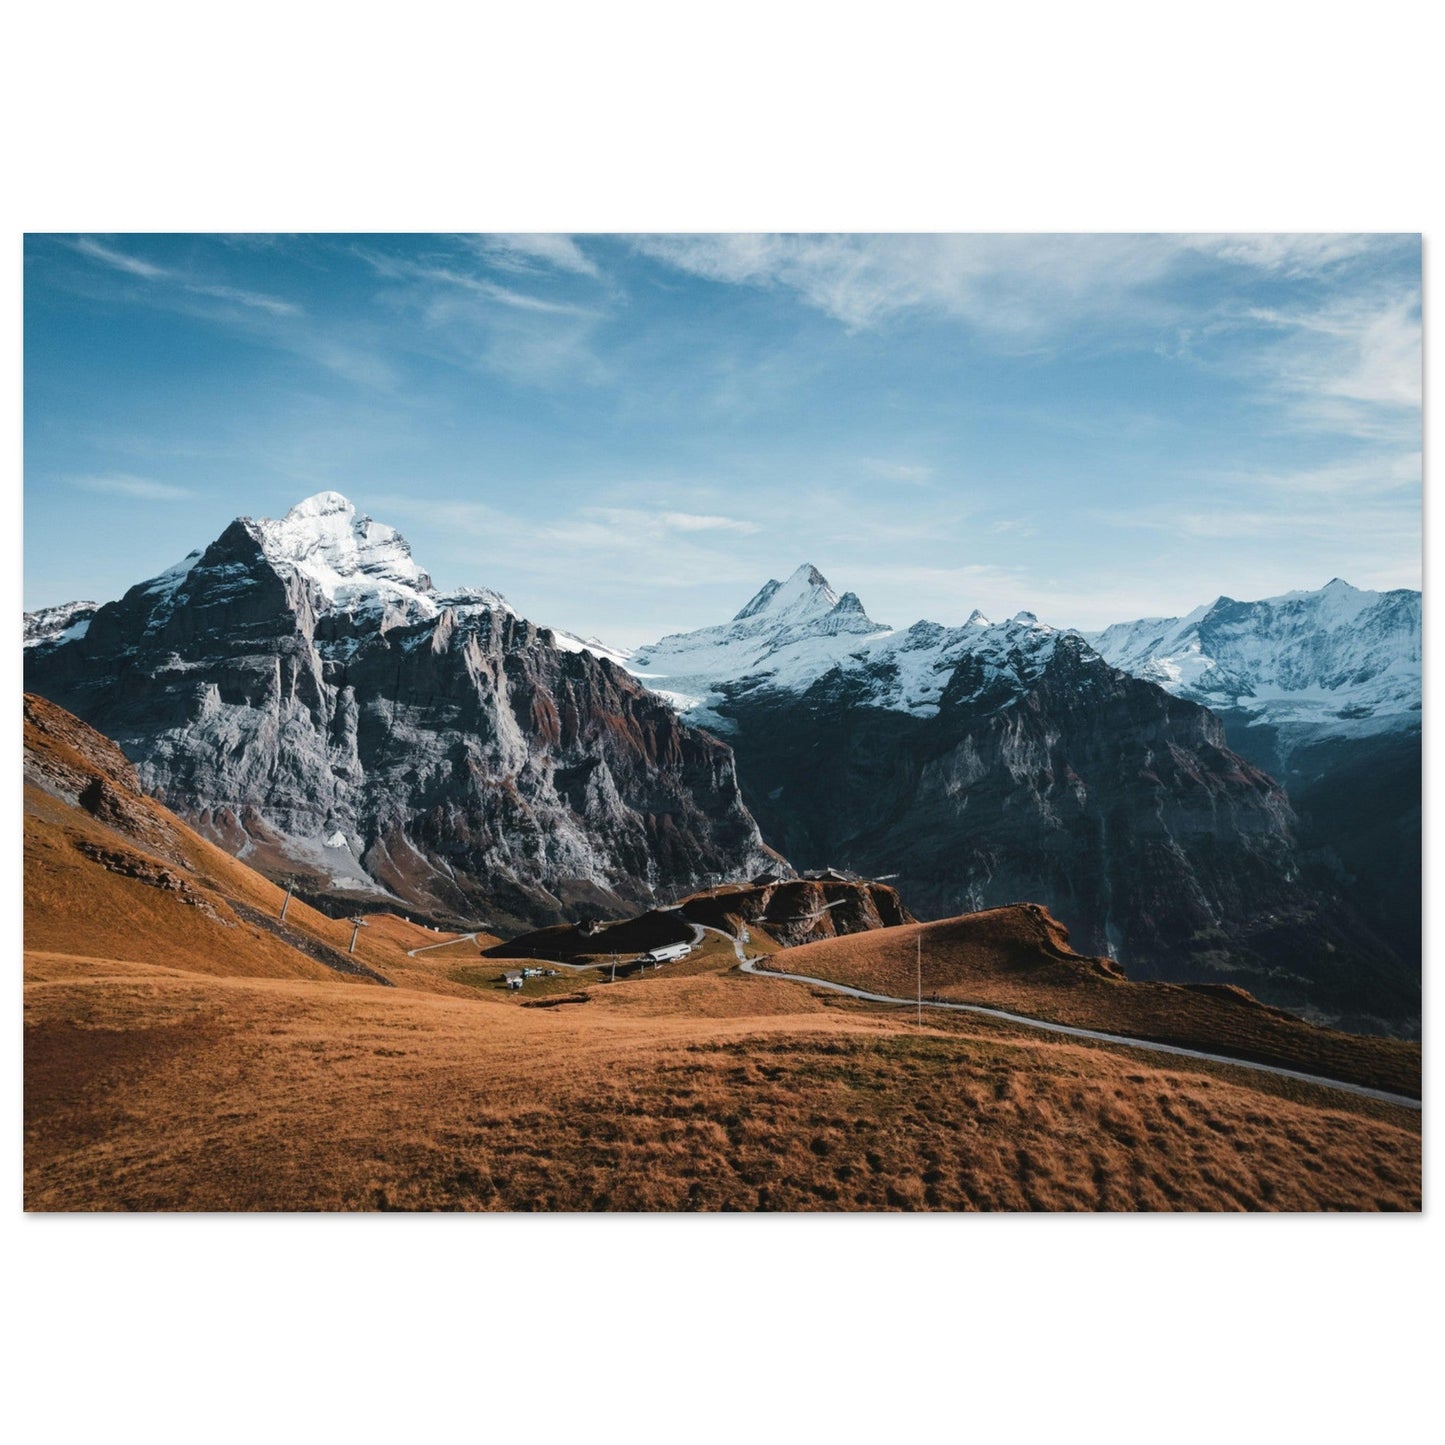 Vente Photo du Faulhorn en automne, Grindelwald, Suisse - Tableau photo alu montagne